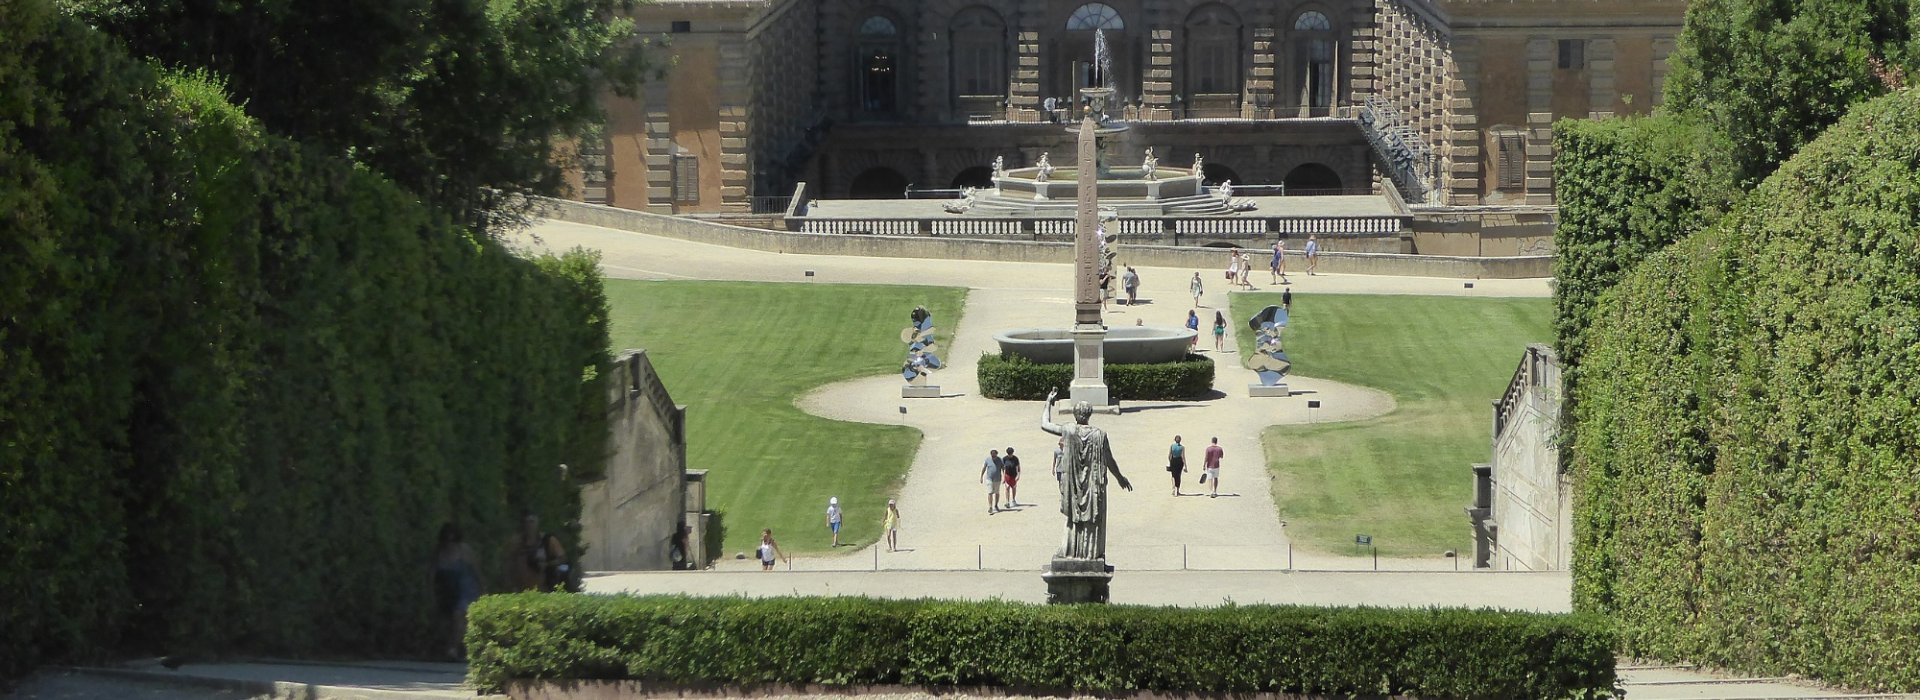 Vista dall'alto del Giardino di Boboli a Firenze per visita guidata